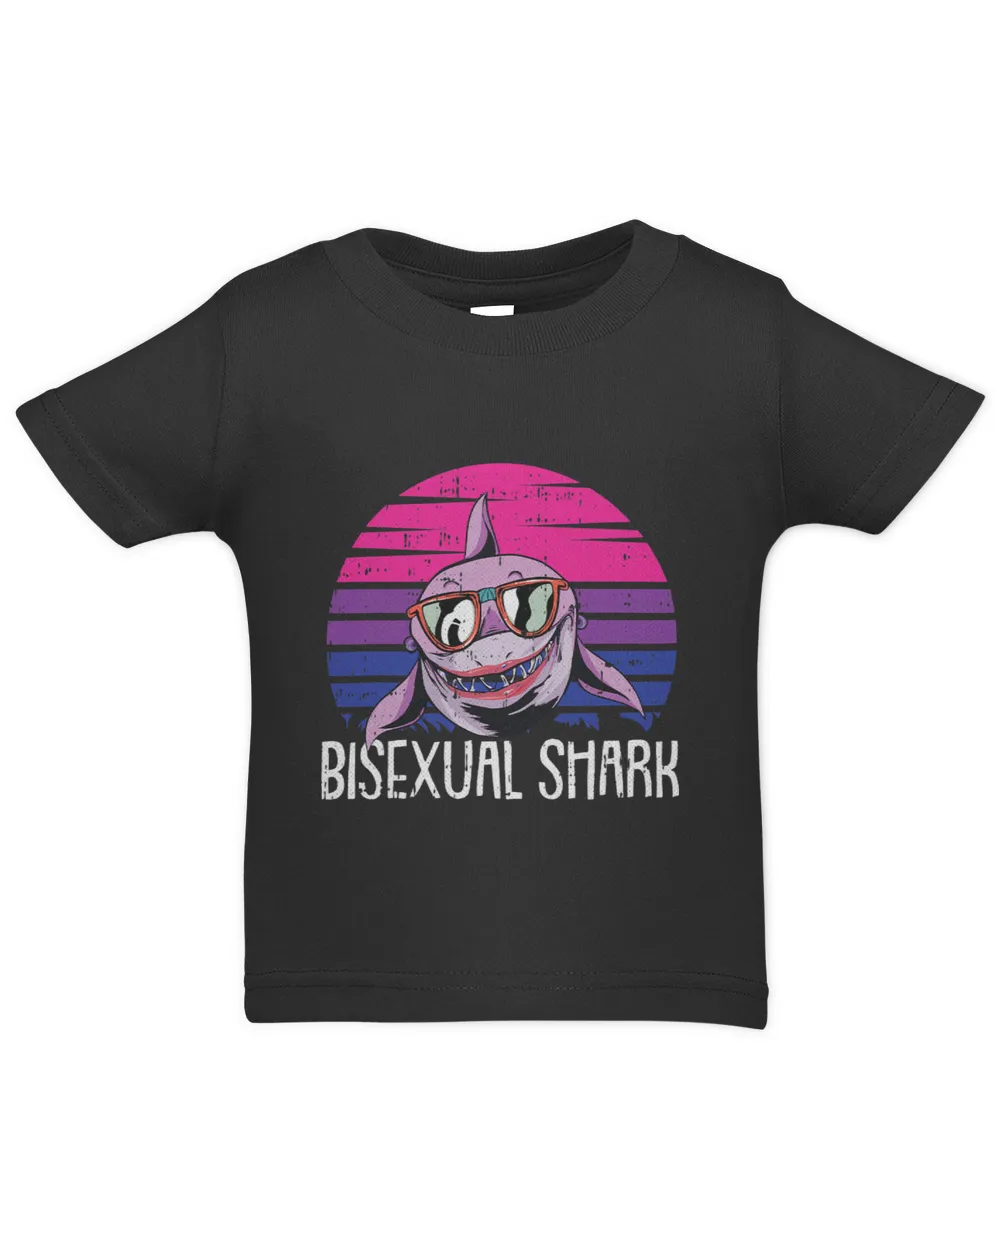 Shark Bi sexual Pride Retro Ocean Animal LGBT Q Proud Ally